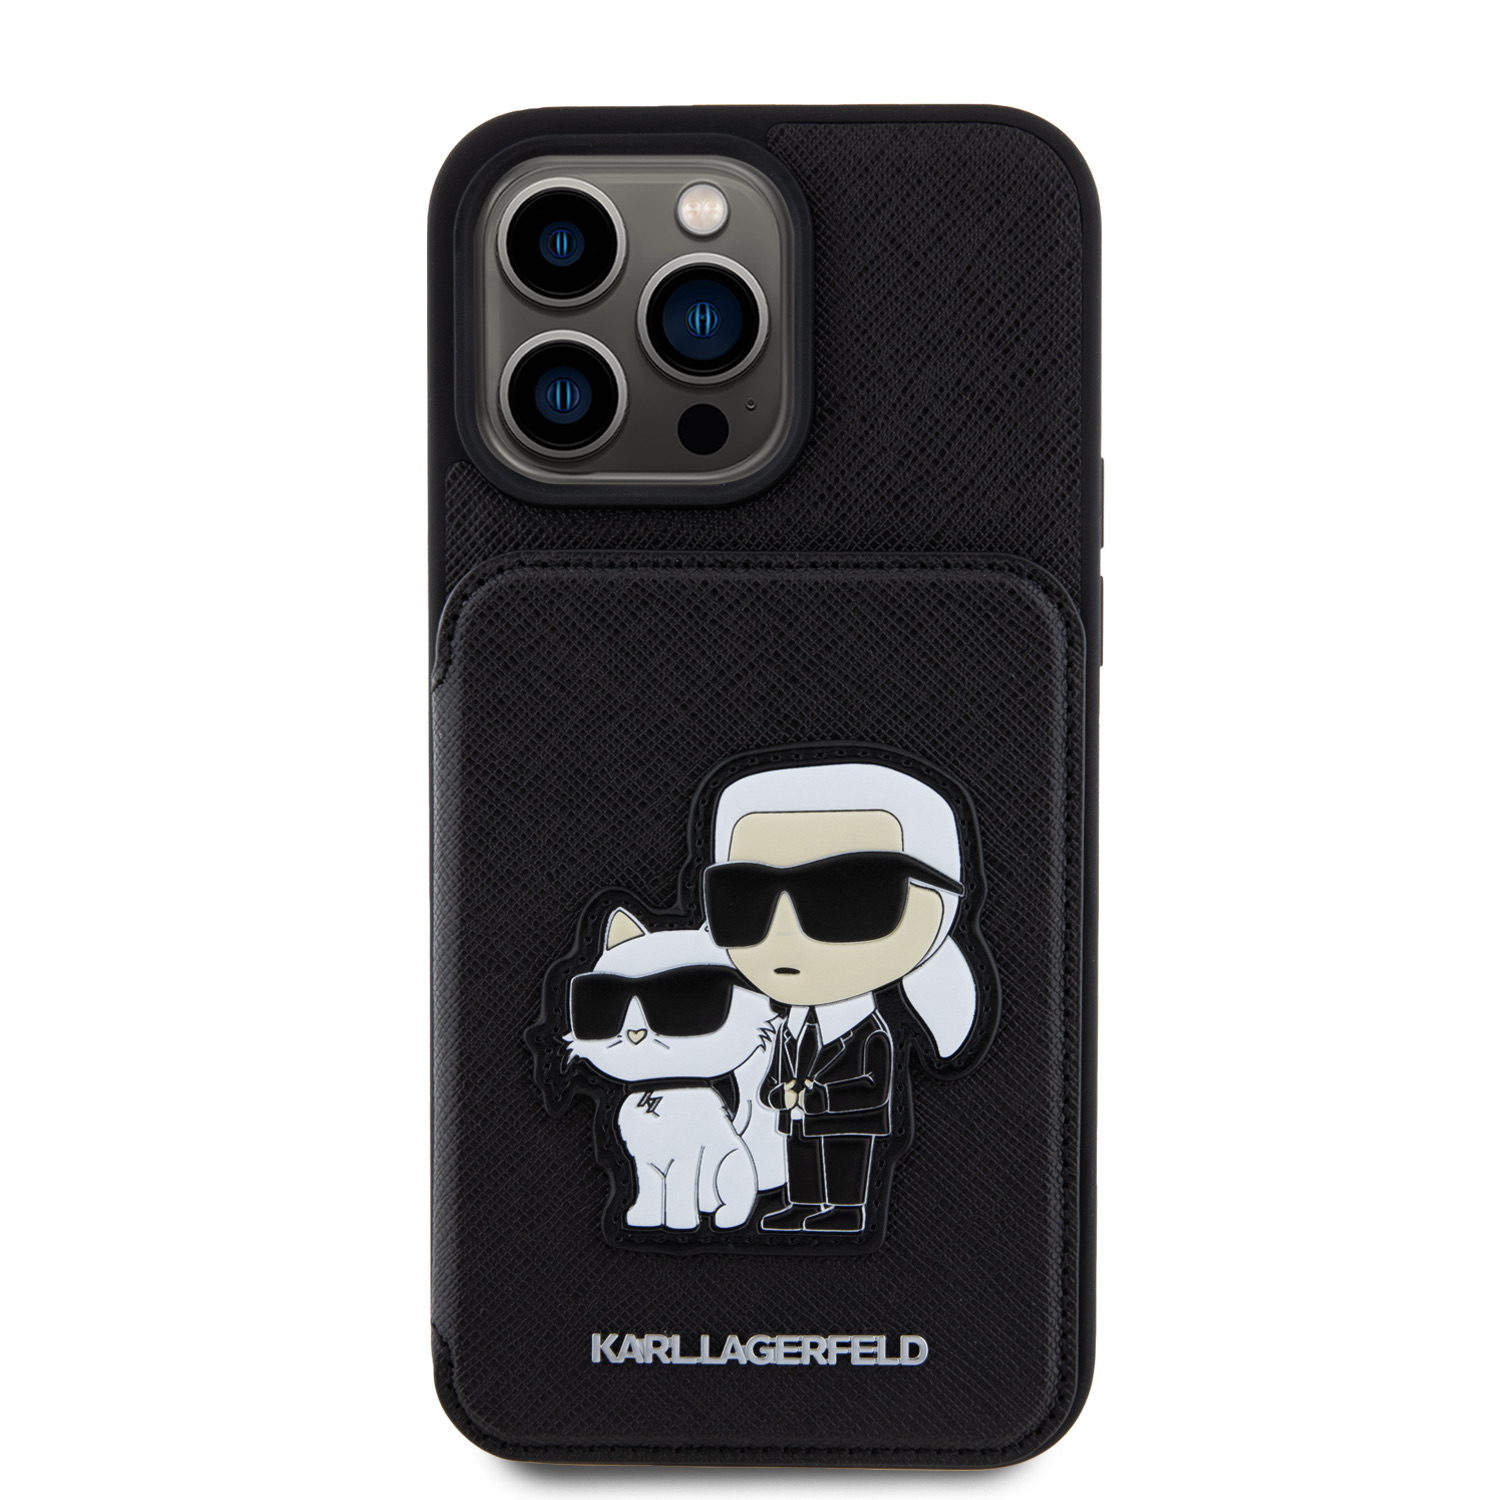 Zadní Kryt Karl Lagerfeld PU Saffiano Card Slot Stand Karl and Choupette pro Apple iPhone 15 Pro Max, černá.
Obal je vyroben z pevného a pružného PU materiálu.  Poskytuje vašemu telefonu tu nejlepší ochranu před poškrábáním, otřesy, prachem a případným pádem.

originál od Karl Lagerfeld
vyrobeno z PU materiálu
skvěle se drží v ruce a neklouže
moderní motiv na zadní straně
všechna ovládací tlačítka a konektory zůstávají plně přístupná
skvělý doplněk vašeho outfitu
chrání...